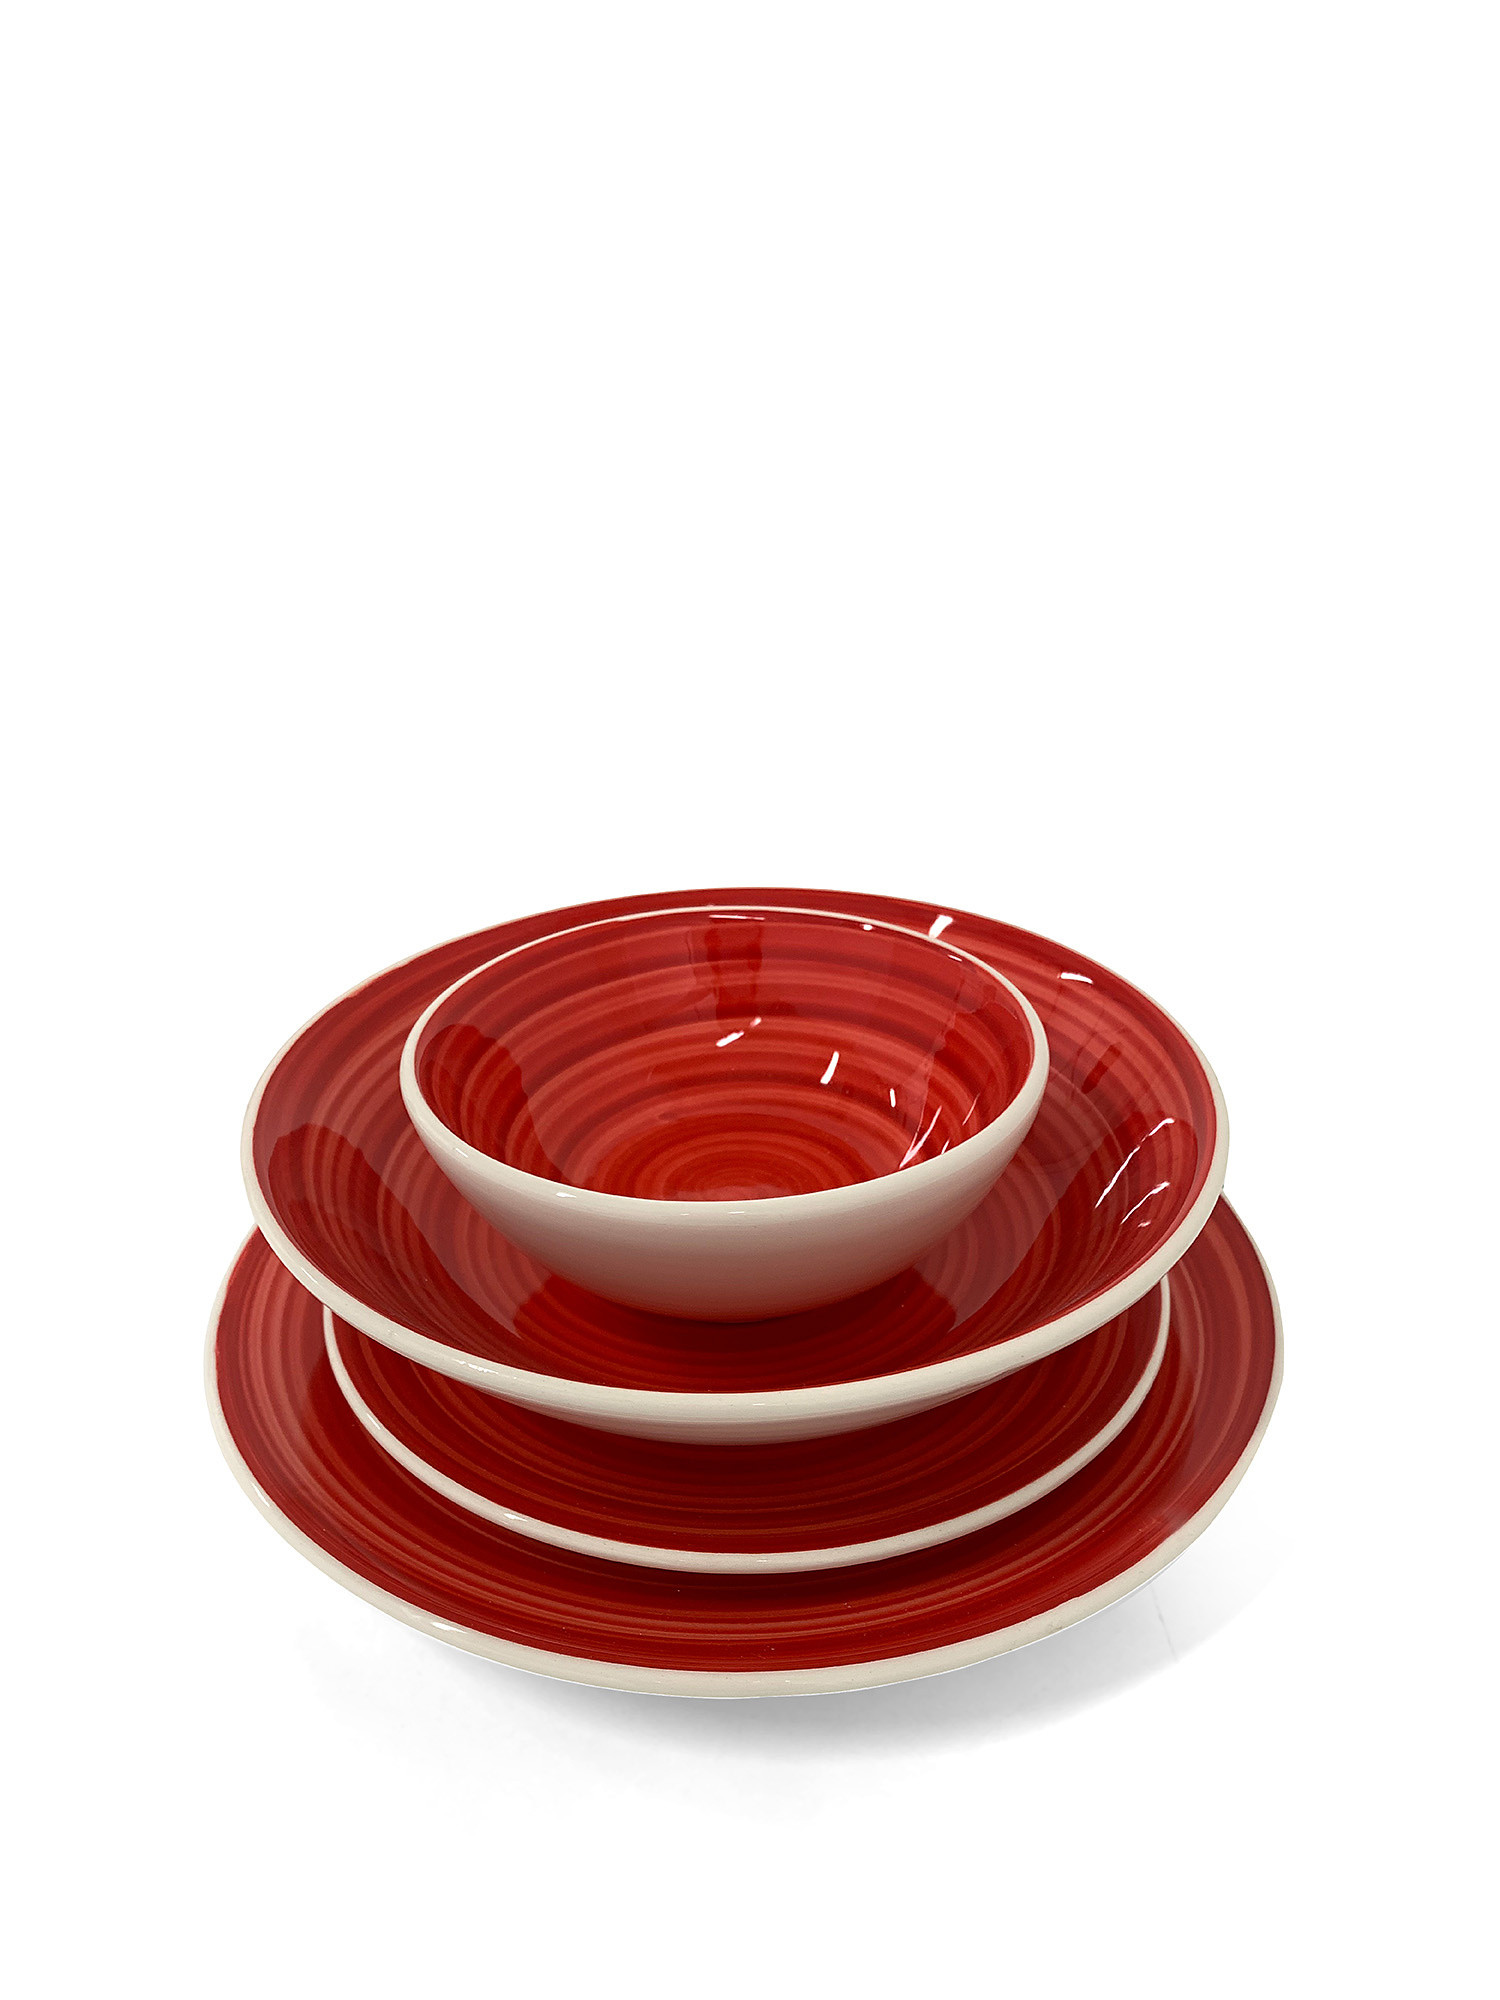 Piatto frutta ceramica dipinta a mano Spirale, Rosso, large image number 1